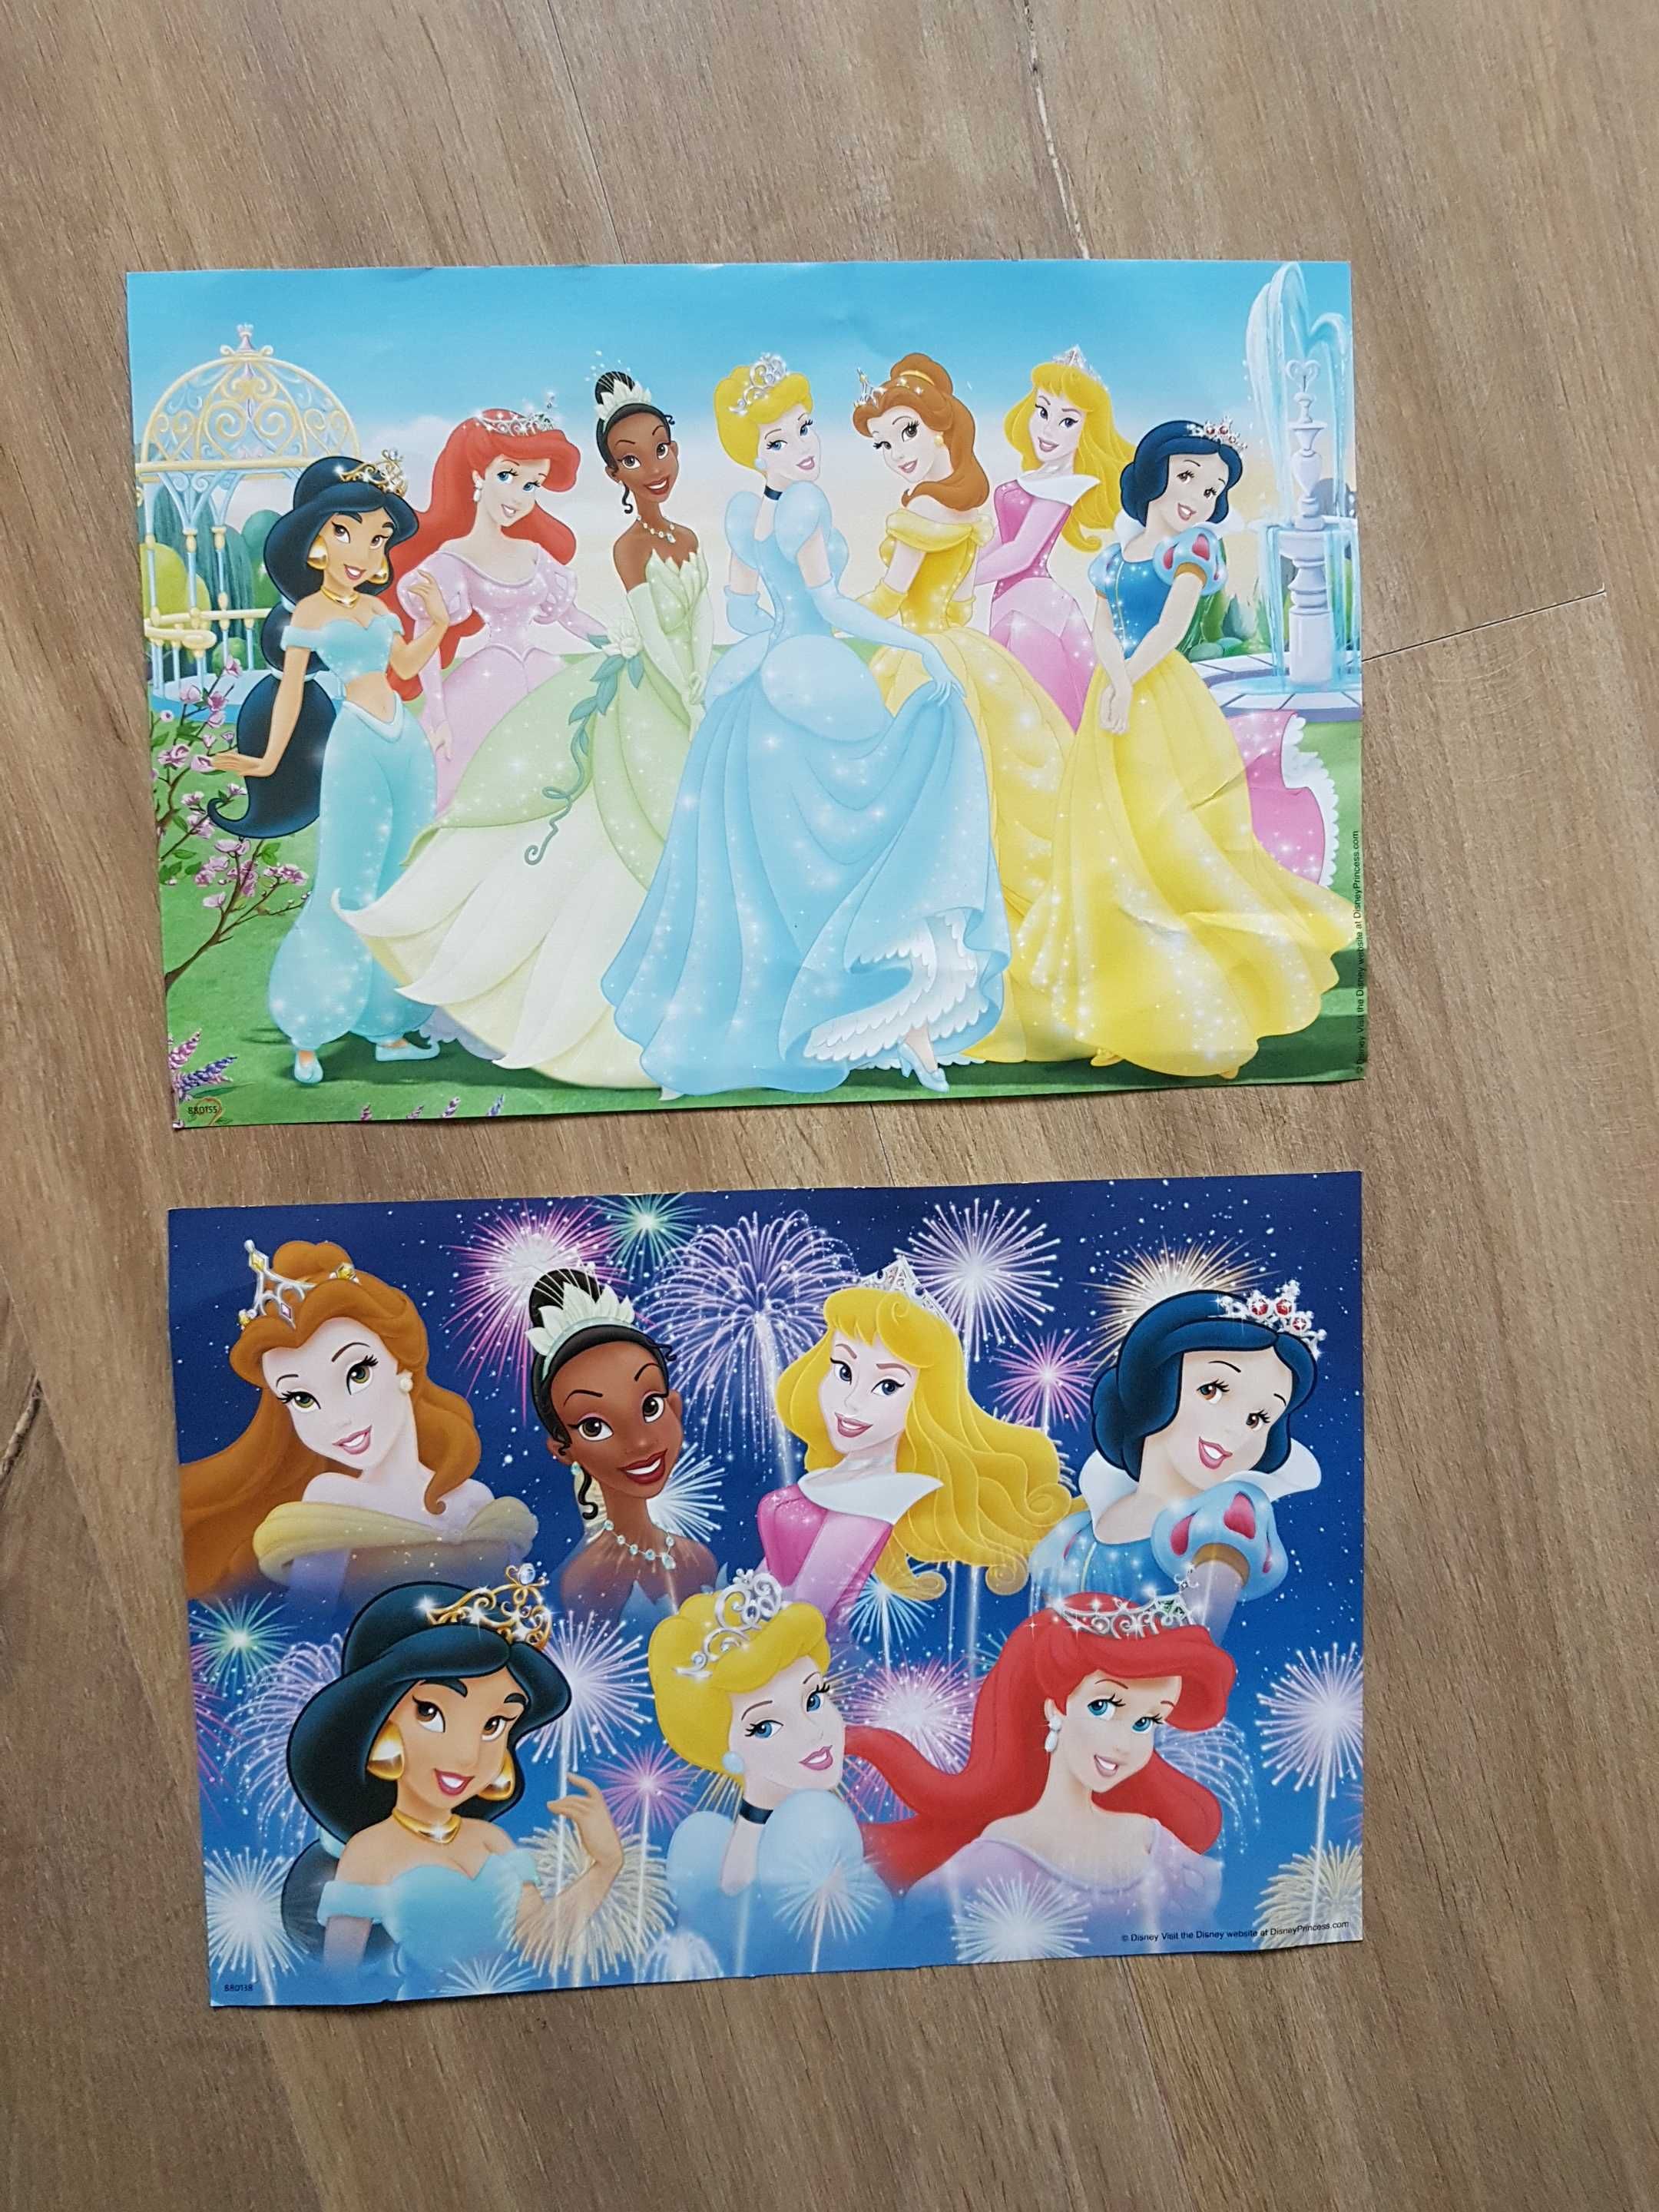 Puzzle Ravensburger Disney Princess Księżniczki 2x20 2x24 ele. wiek 4+